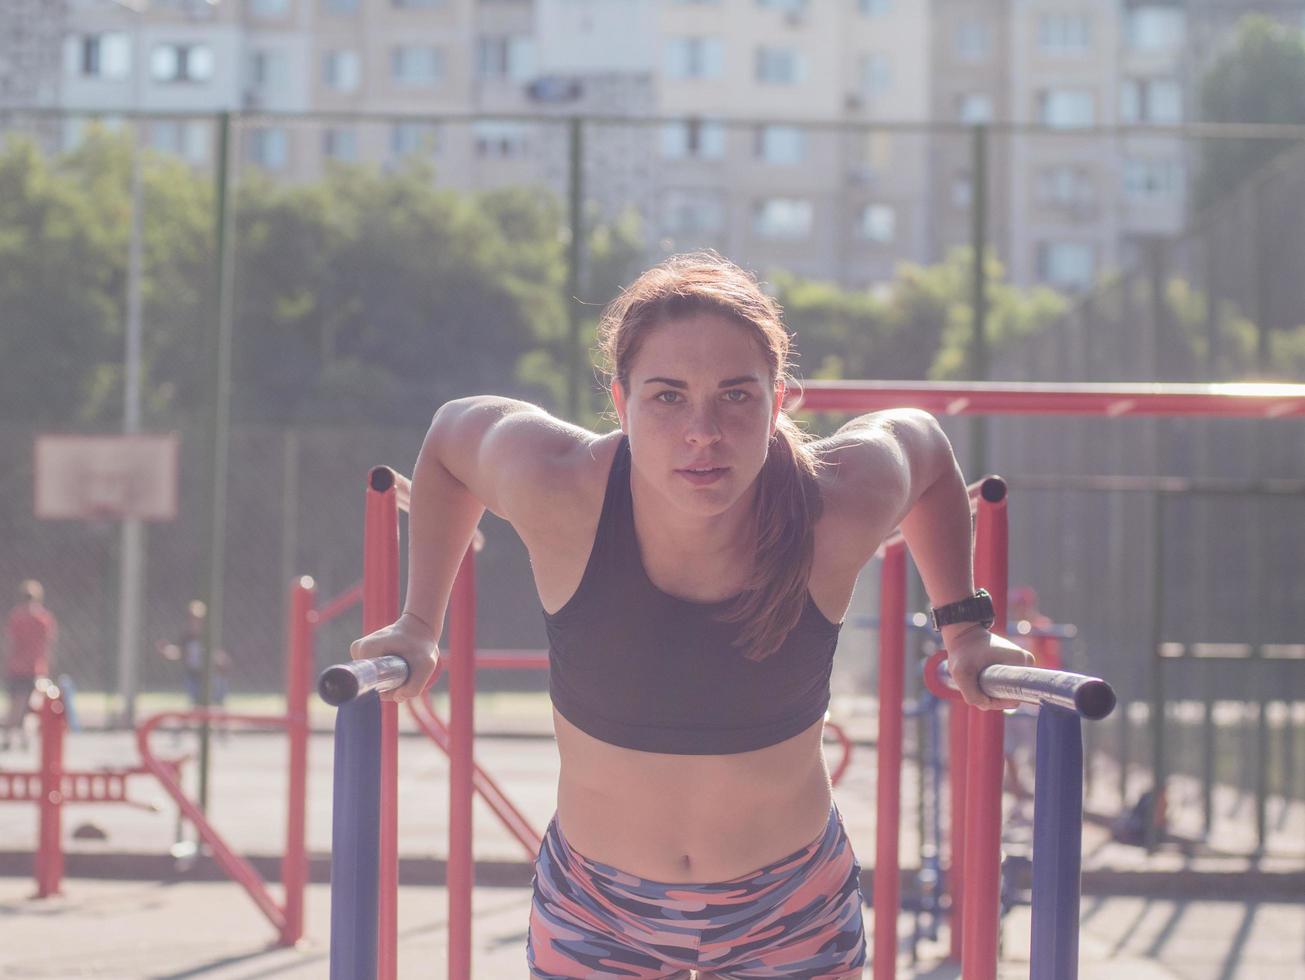 Junge starke Frau, die im Sommer im Freien trainiert, weibliche Profisportlerin macht Übungen im Park foto